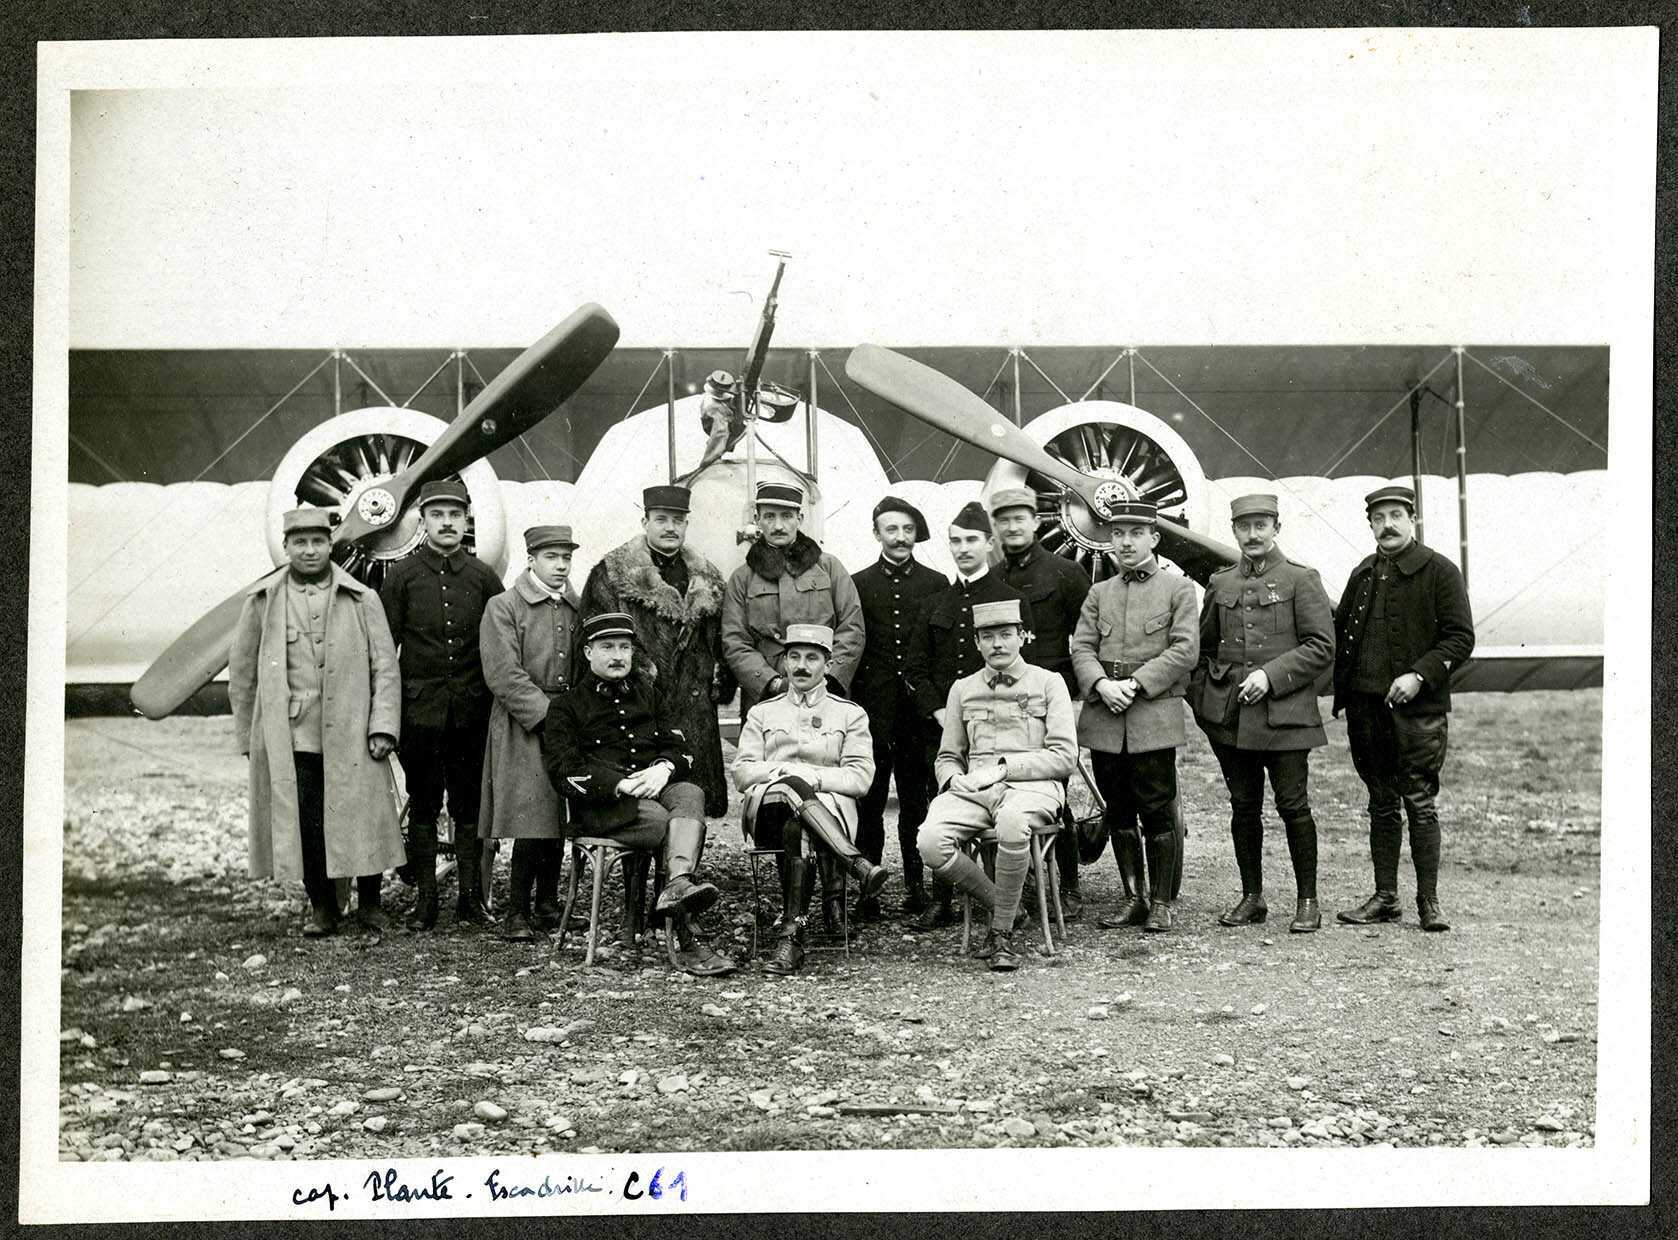 Belfort, Centre aéronautique militaire, Champ-de-Mars (Parc-à-Ballons) en septembre 1916, des officiers et pilotes de l'escadrille C 61.